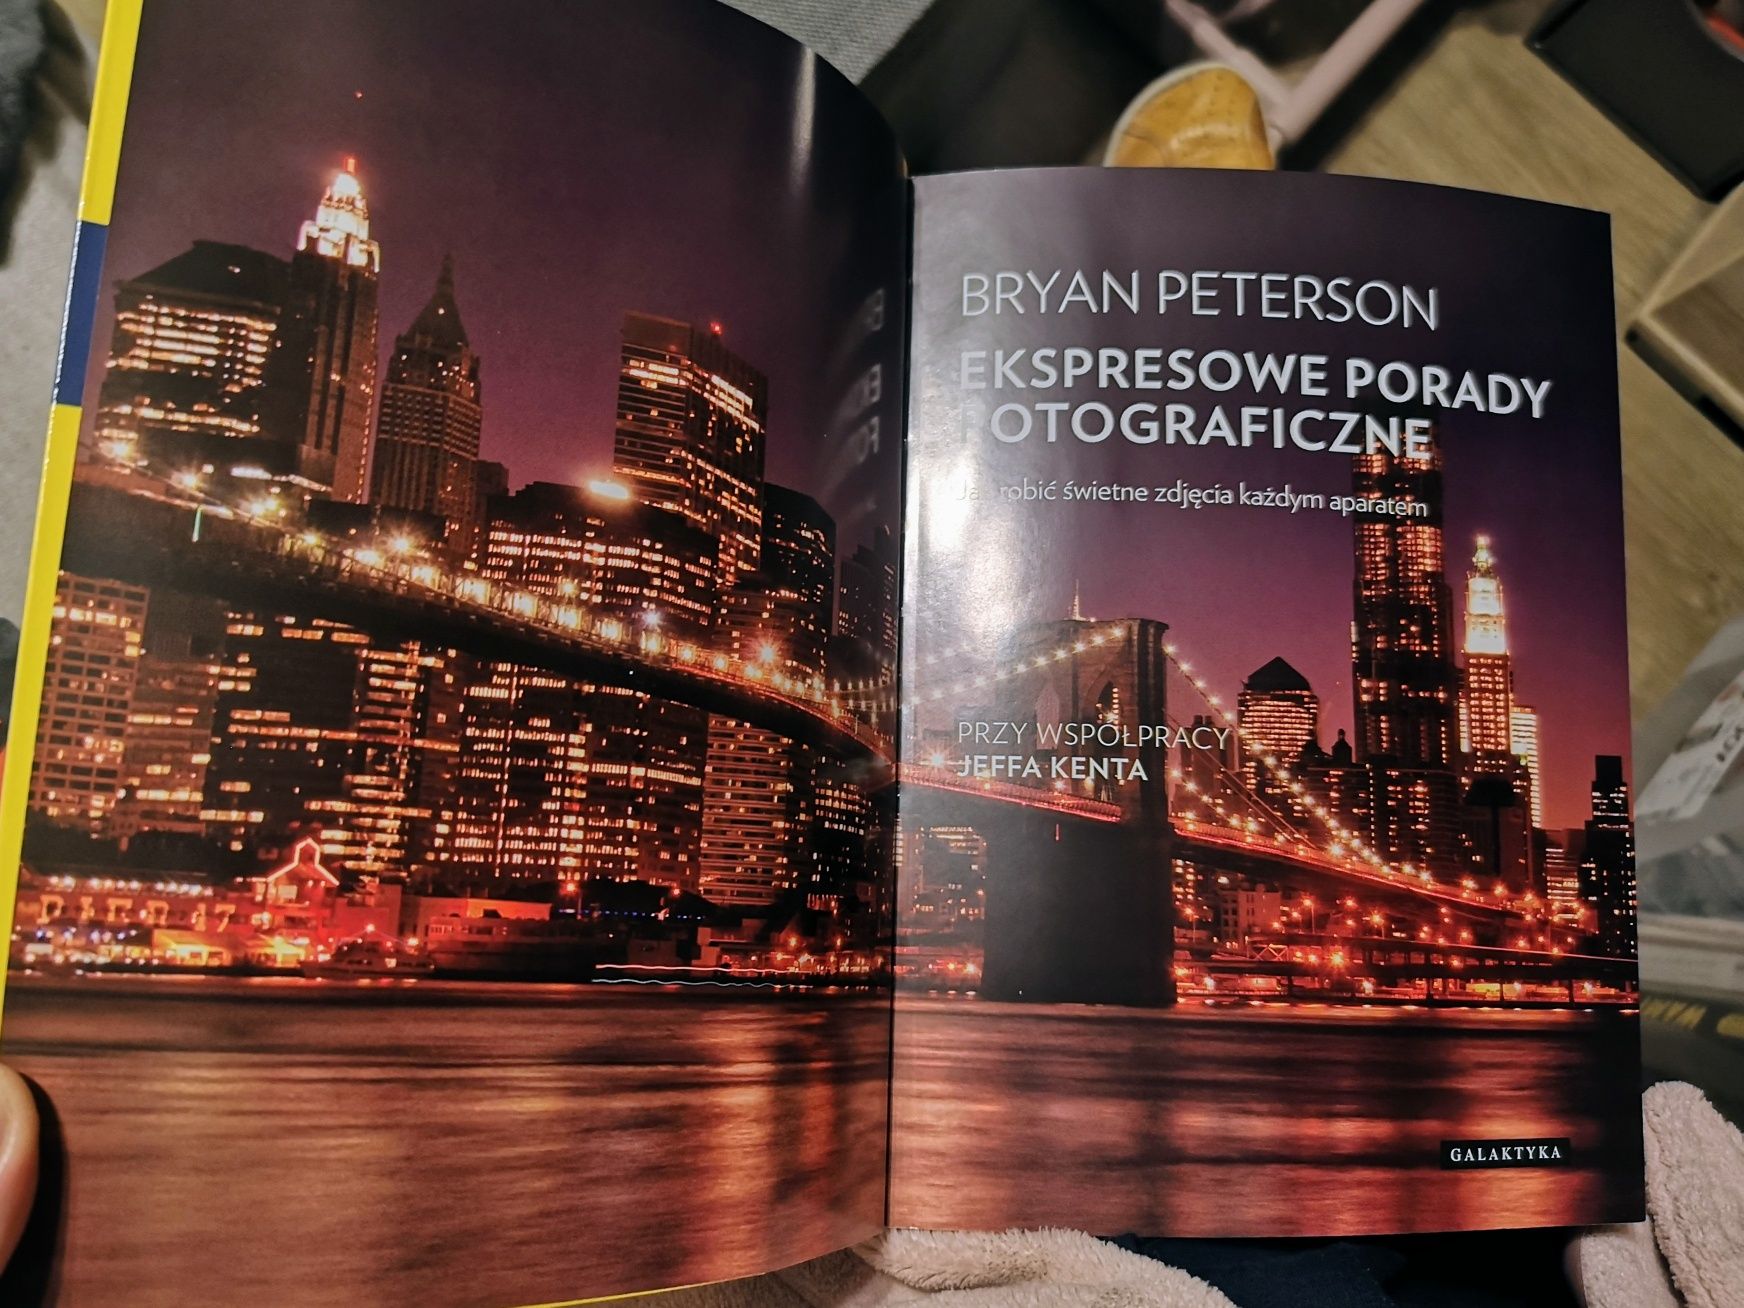 Poradnik Ekspresowe porady fotograficzne, Peterson